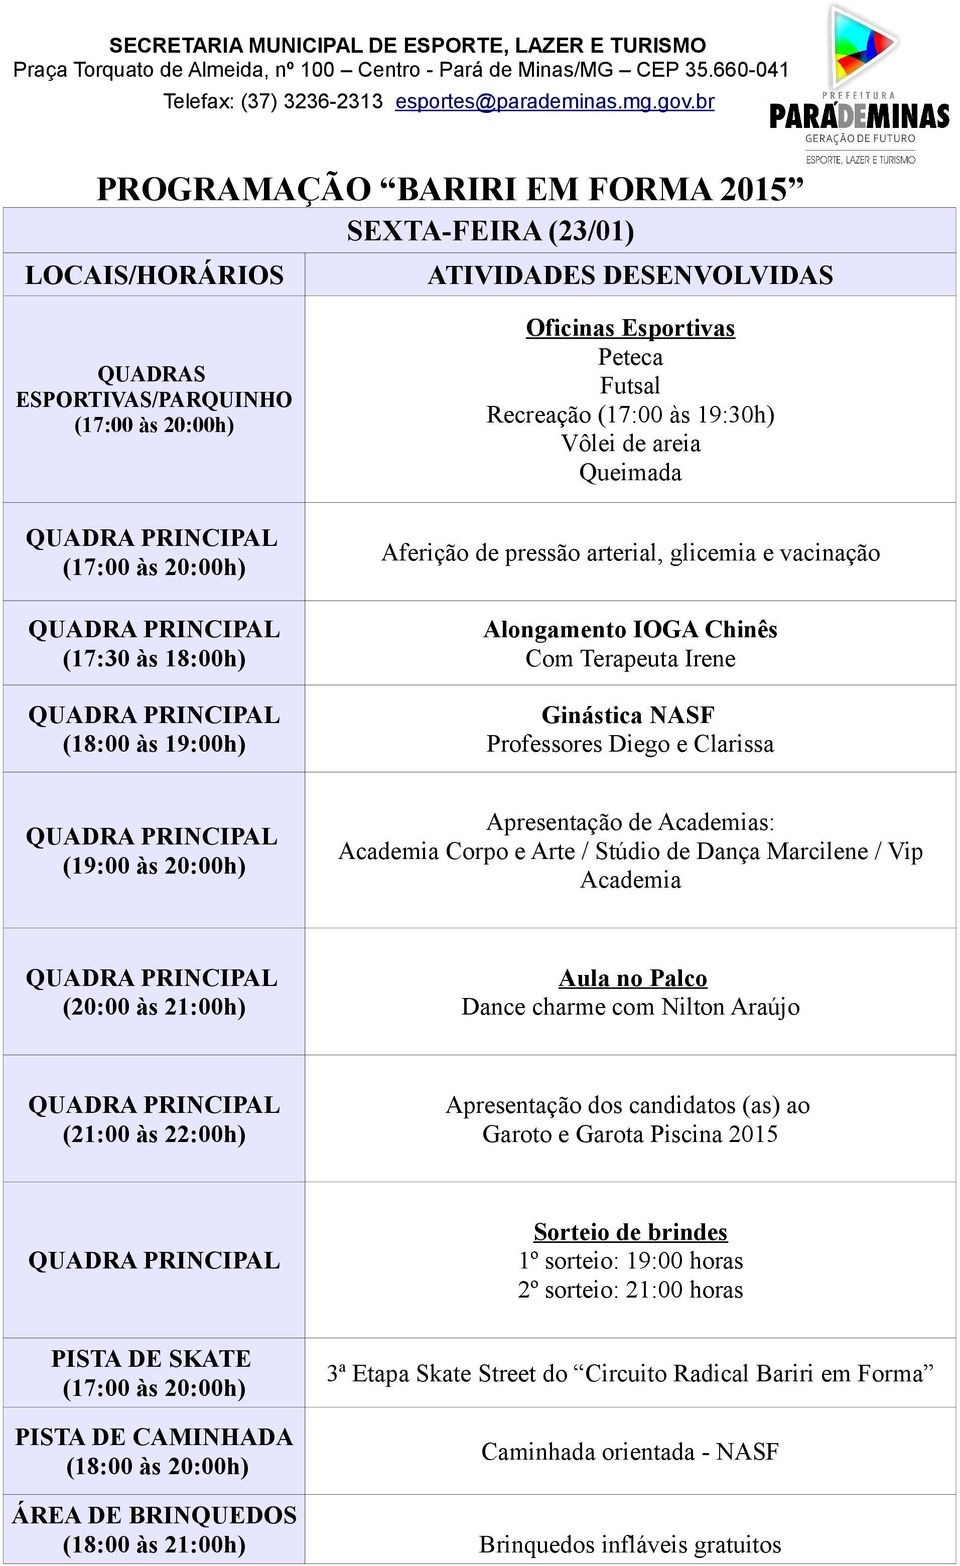 Vip Academia Dance charme com Nilton Araújo (21:00 às 22:00h) Apresentação dos candidatos (as) ao Garoto e Garota Piscina 2015 PISTA DE